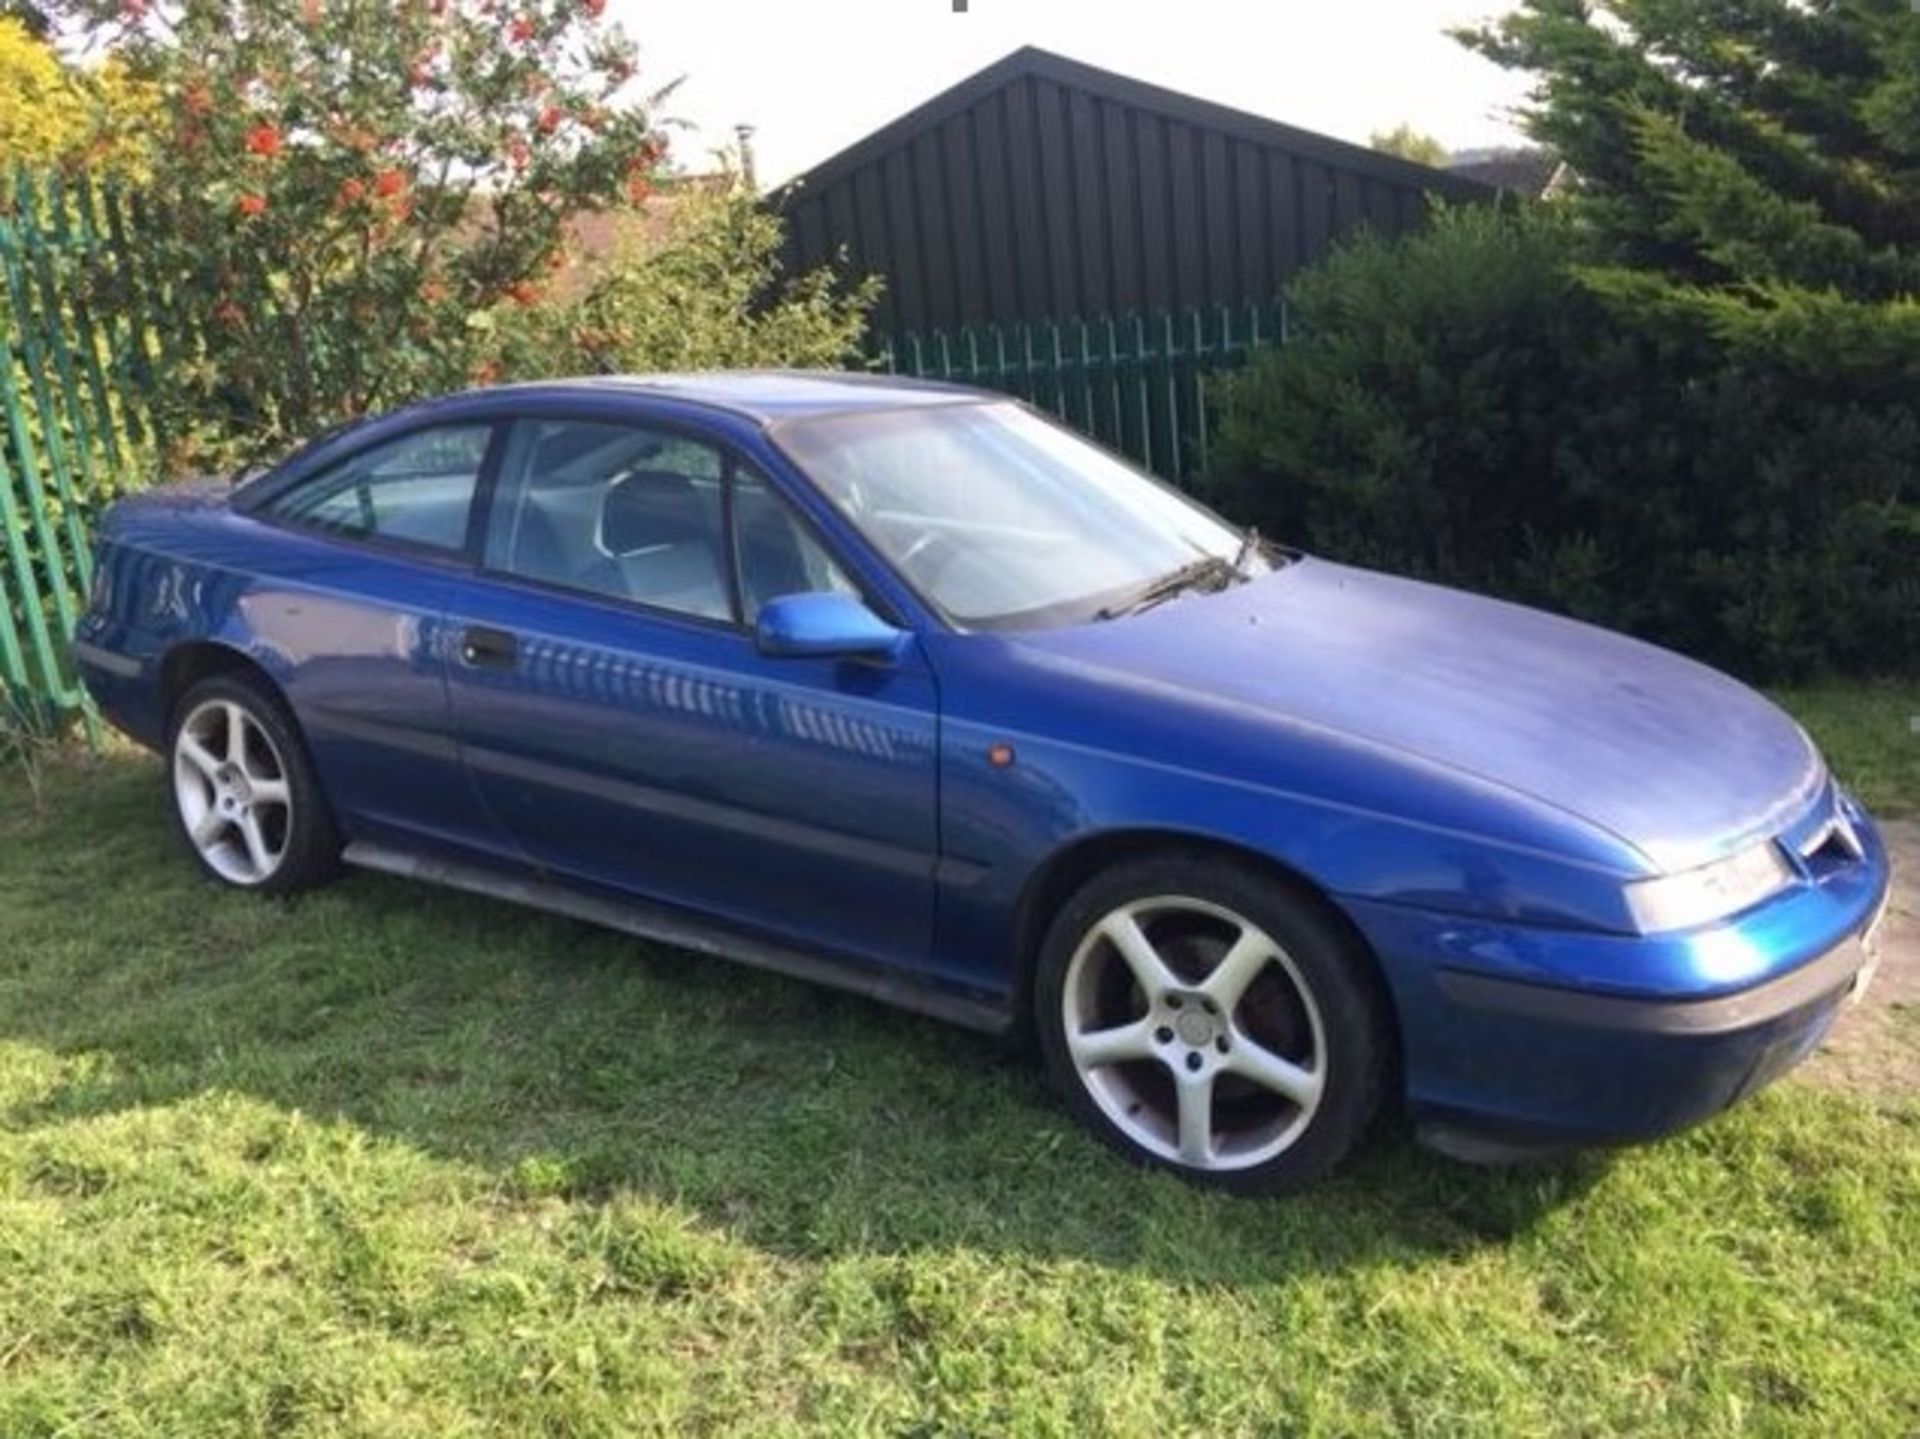 A 1997 Vauxhall Calibra V6 Coupé, registration number P614 NRP, blue. This V6 Calibra will be